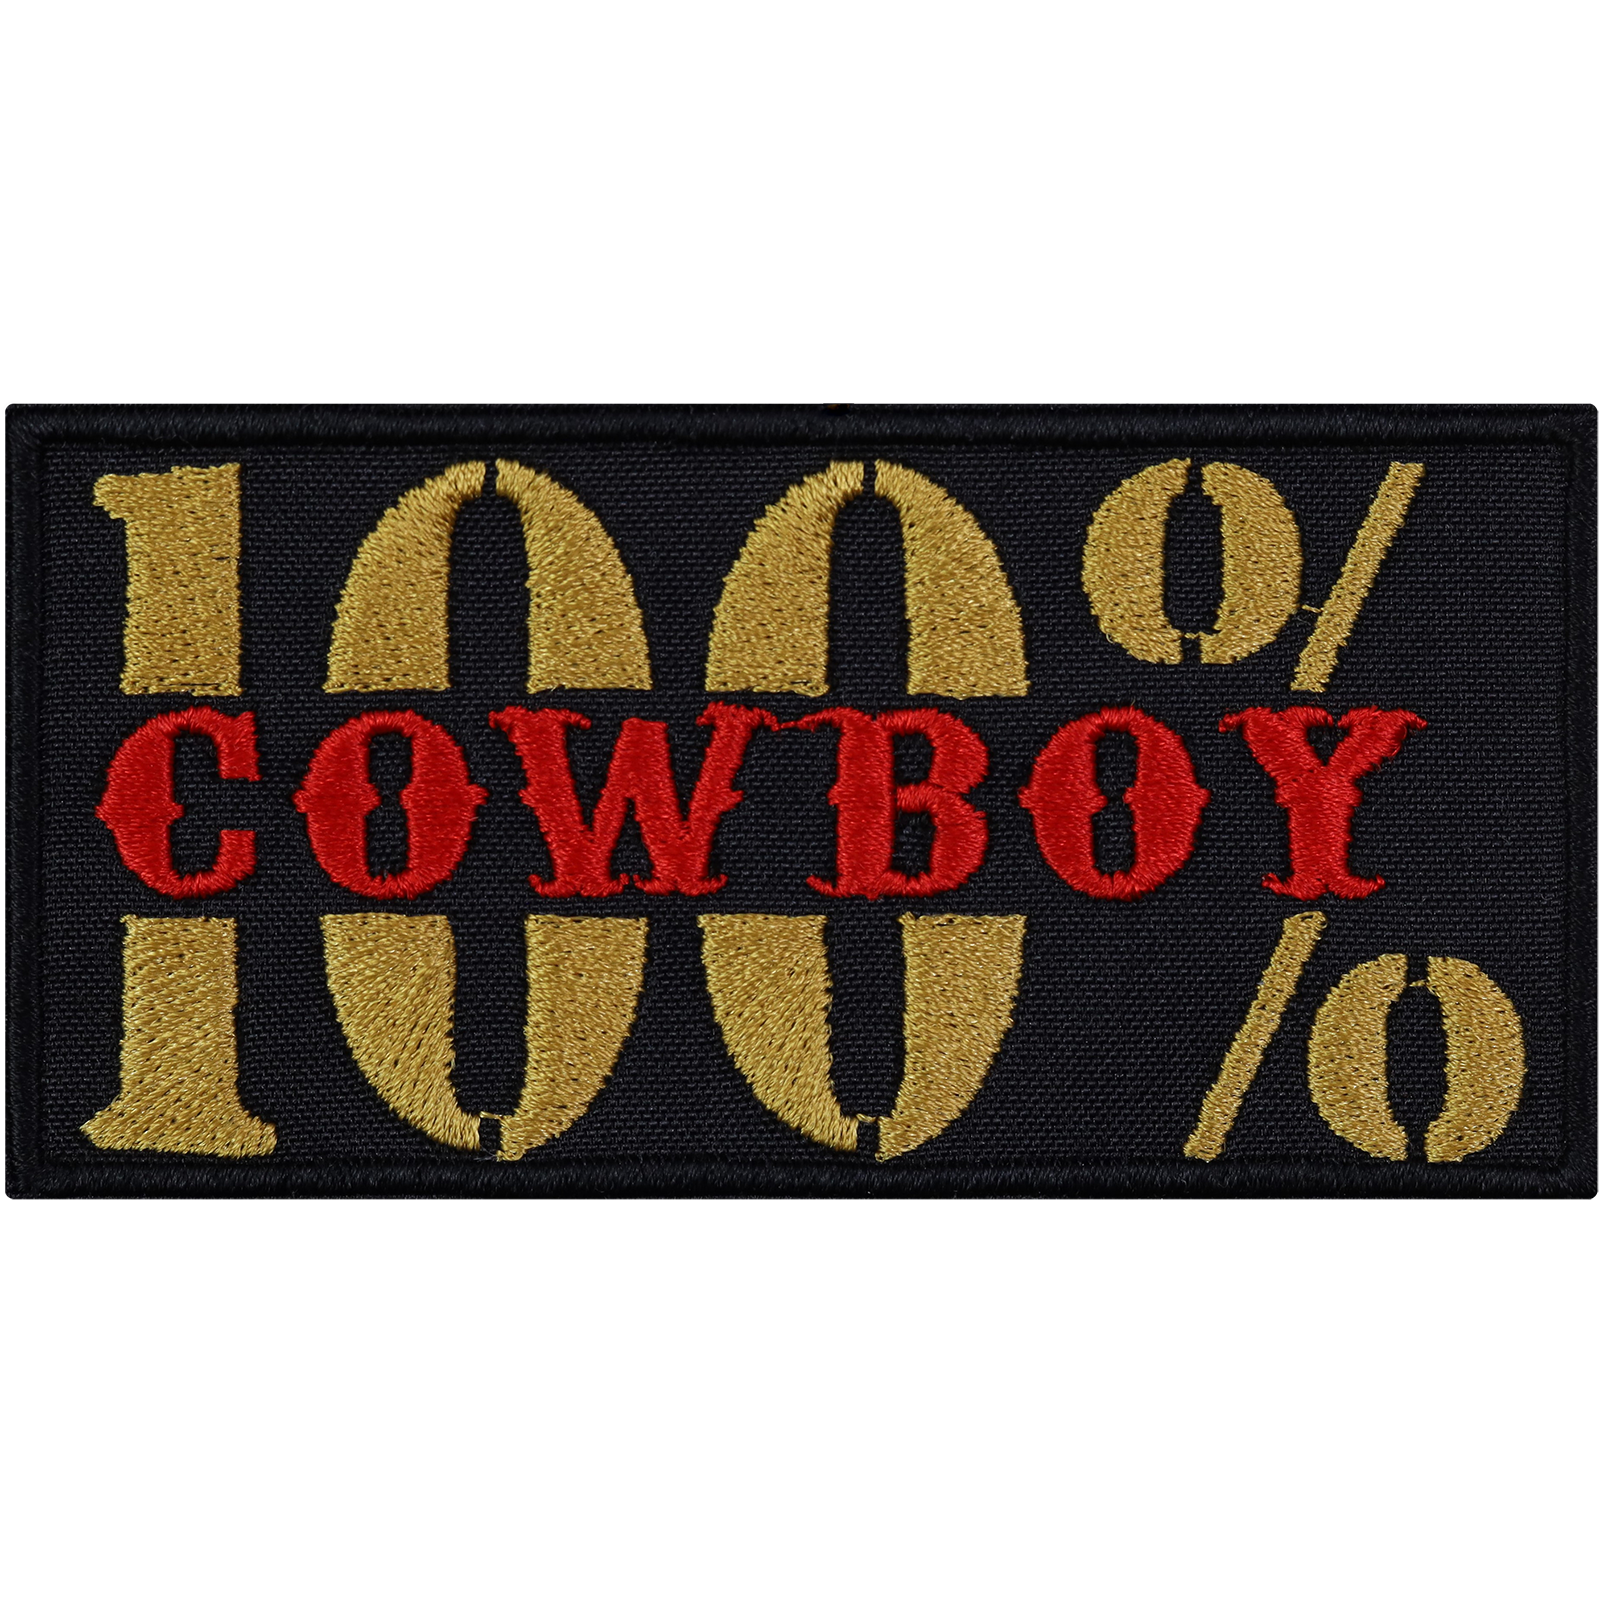 100% Cowboy - Patch